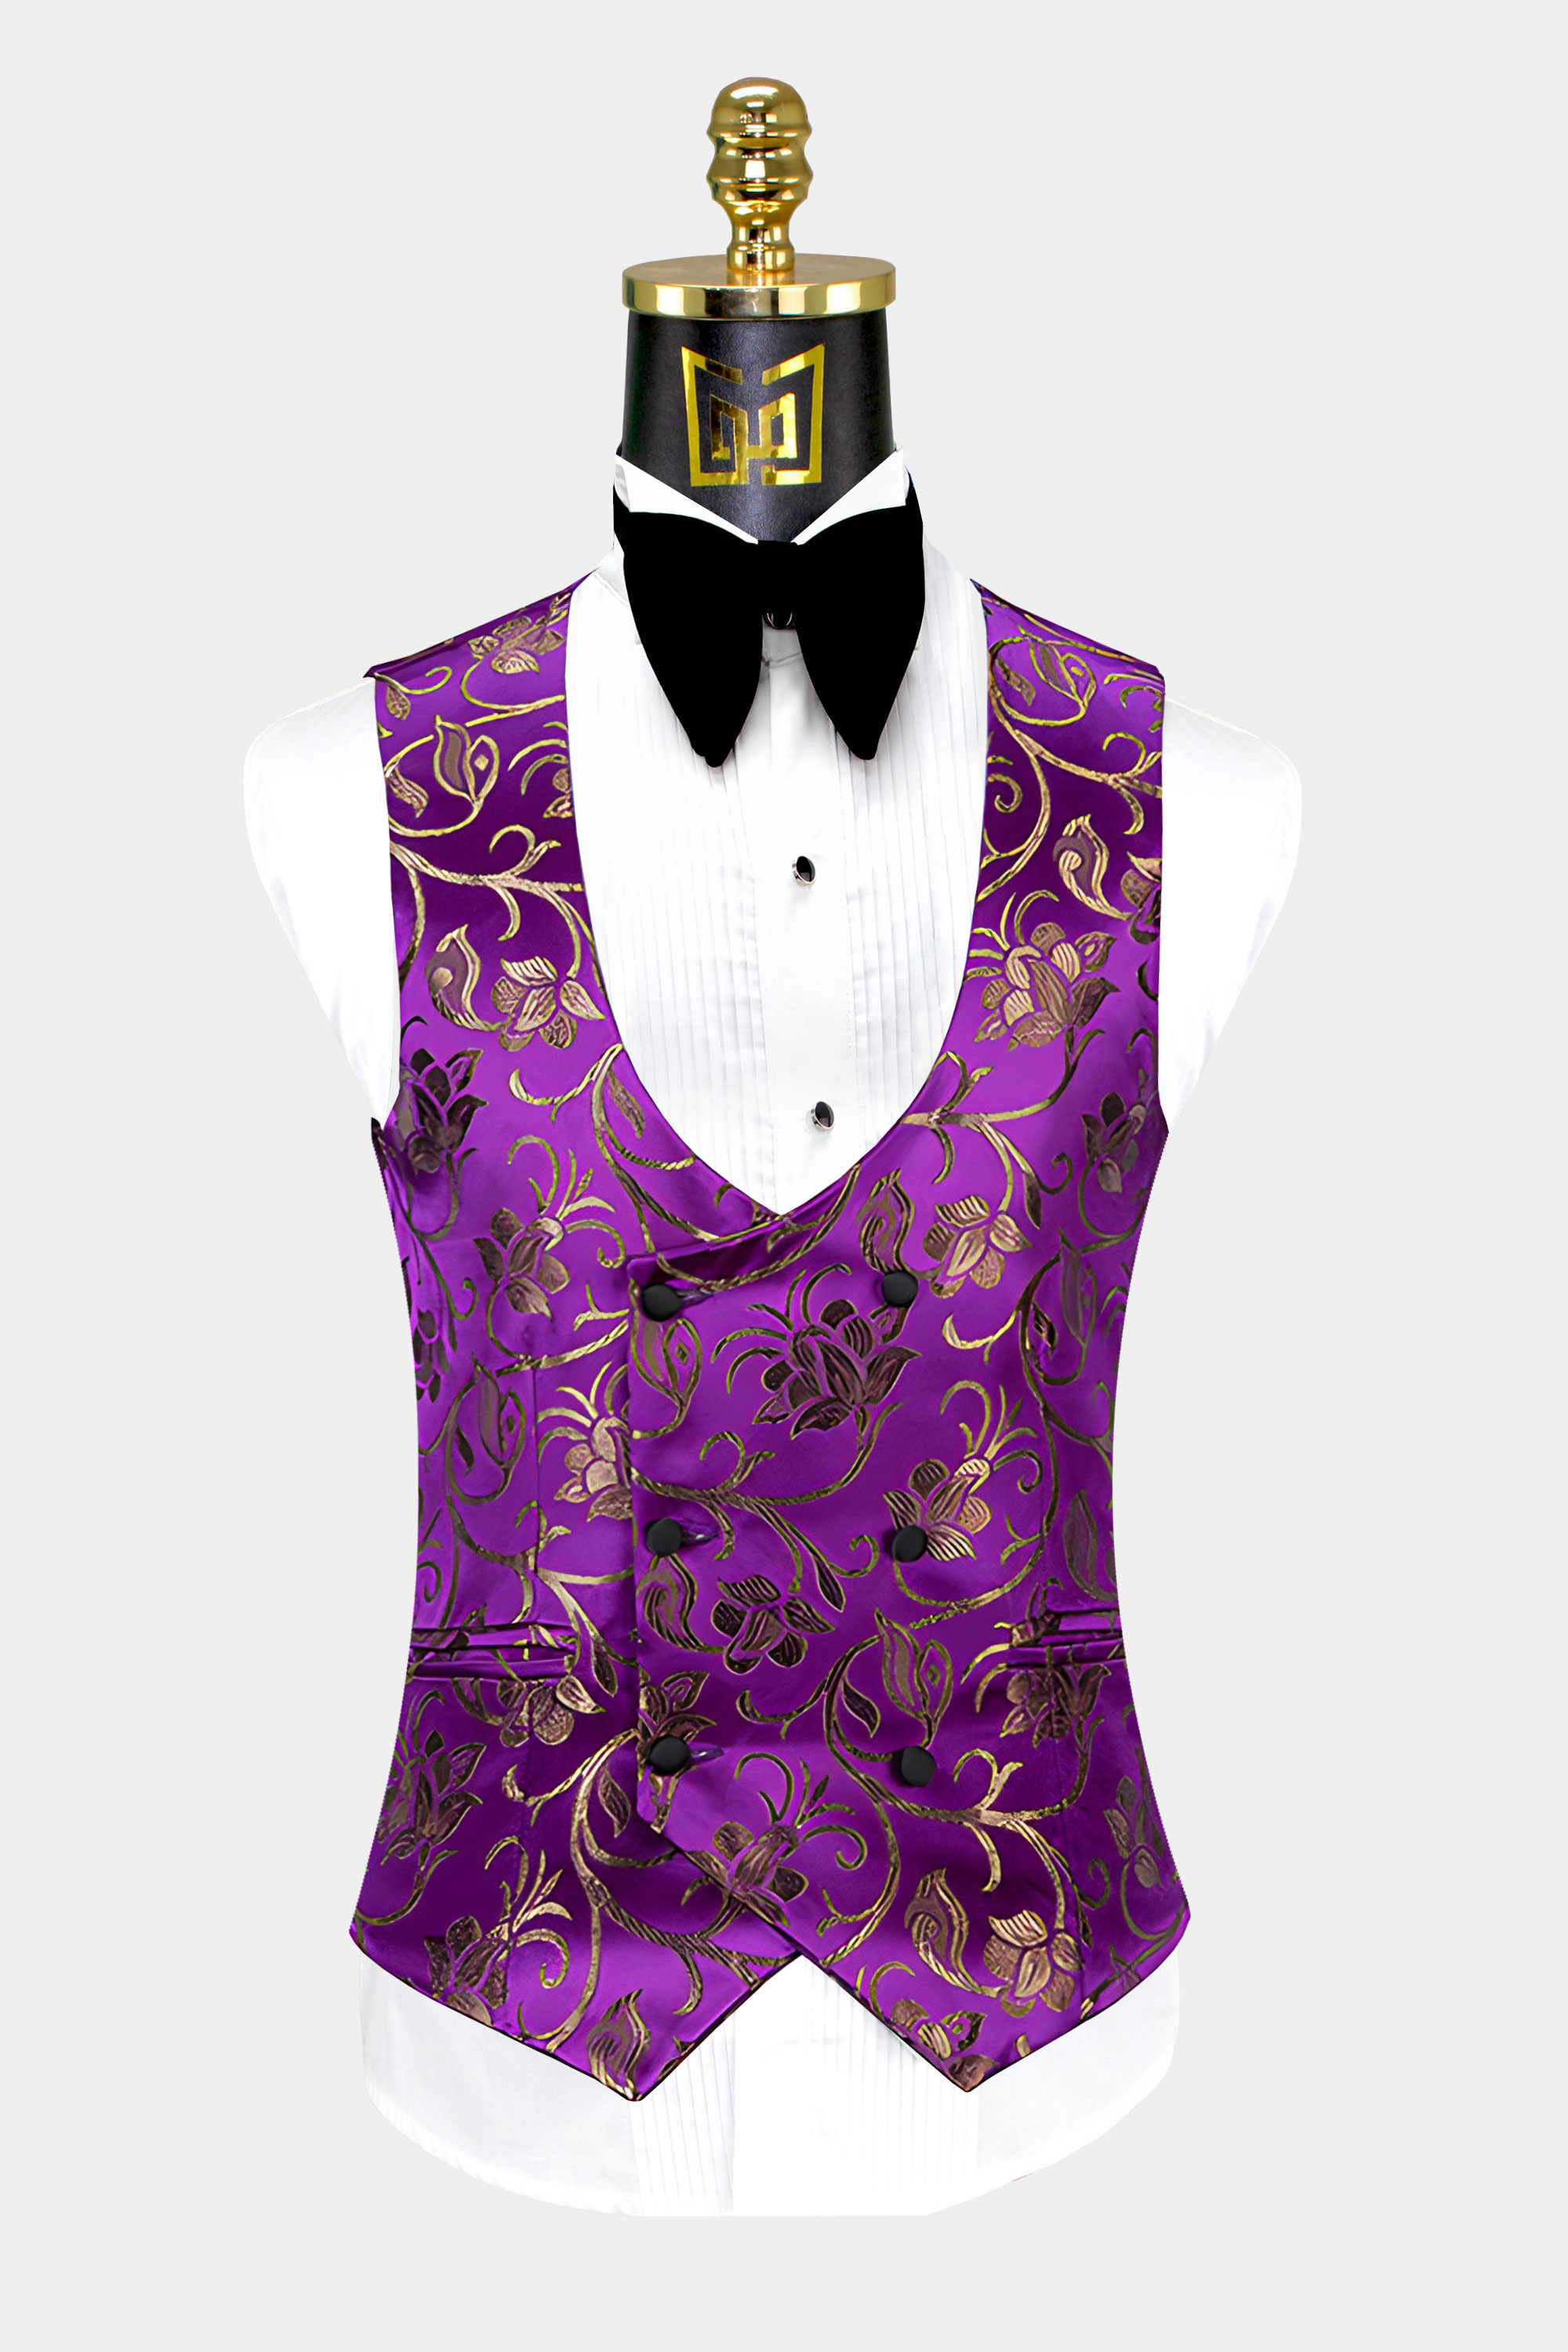 Mens-Purple-and-Gold-Tuxedo-Vest-from-Gentlemansguru.com